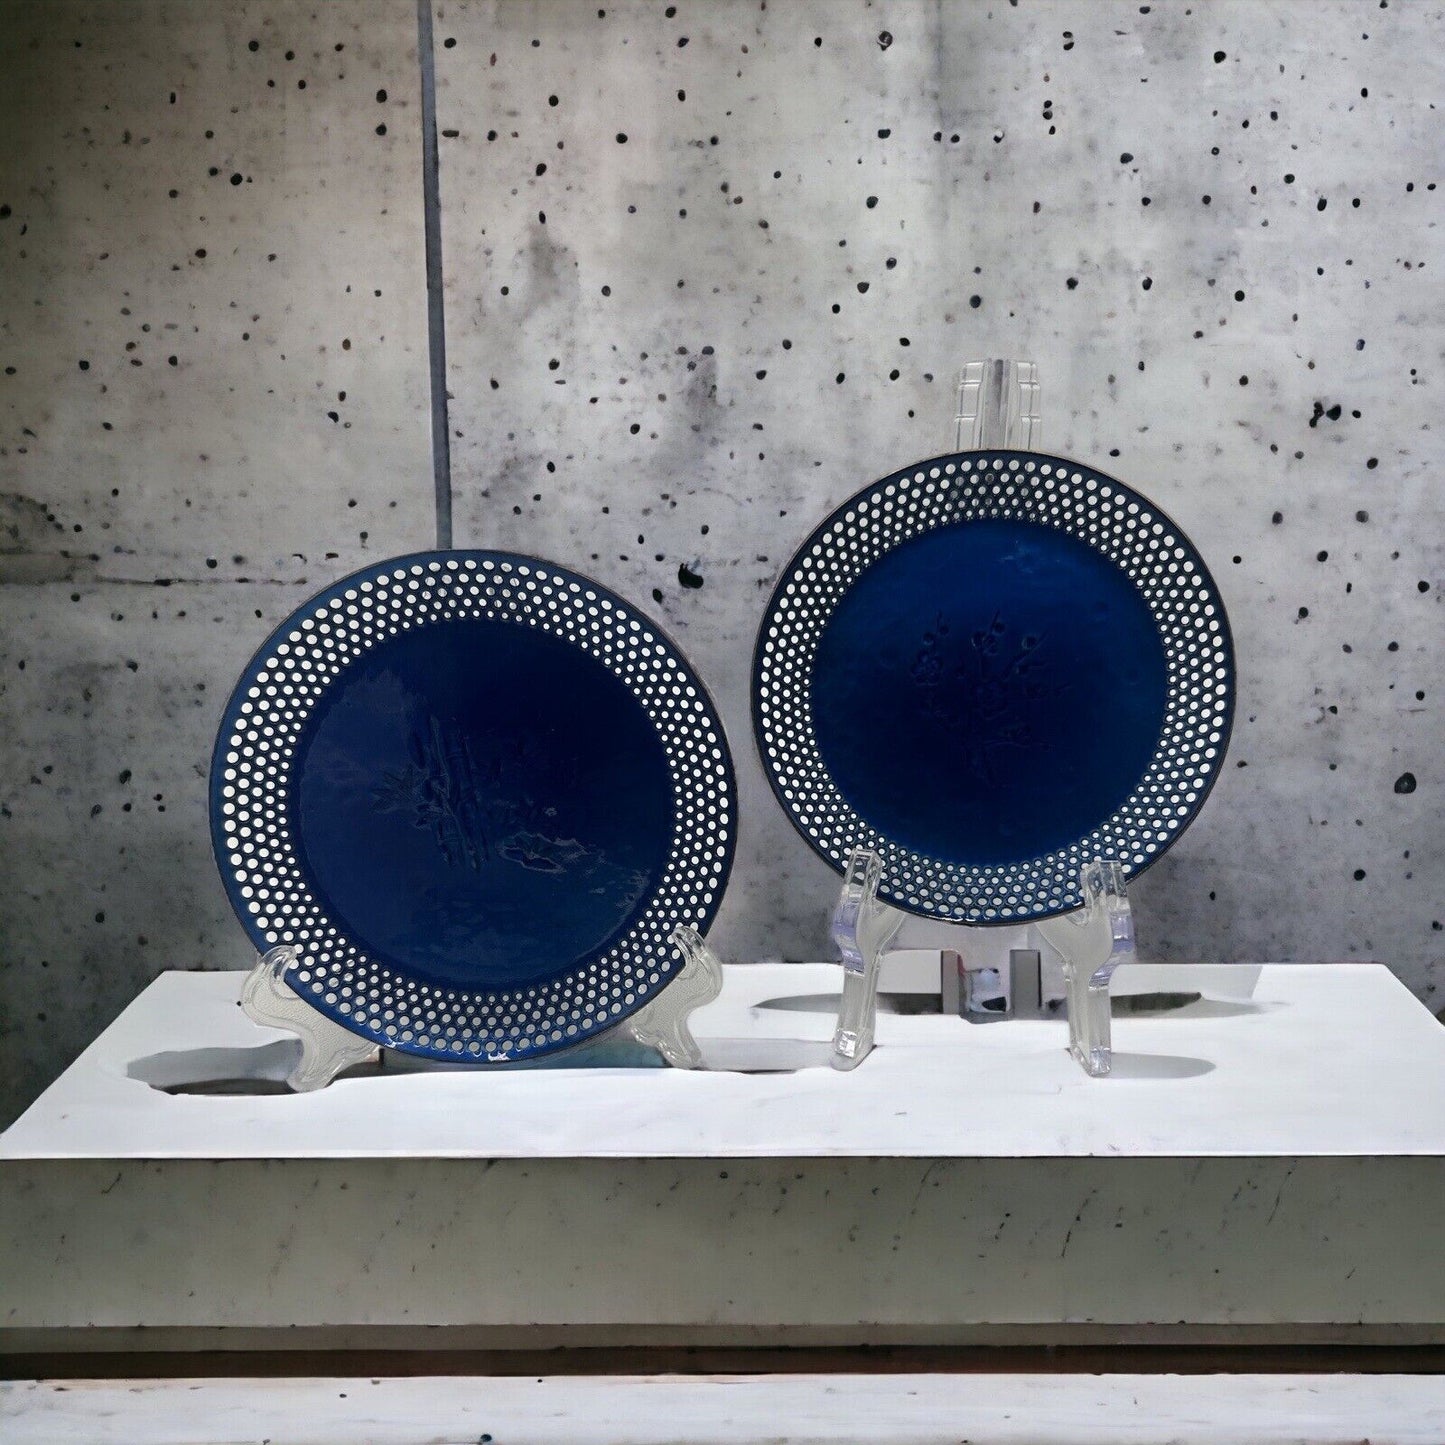 Vintage Ando Cloisonné cobalt blue Enamel plates Open Work Rims Japan Small